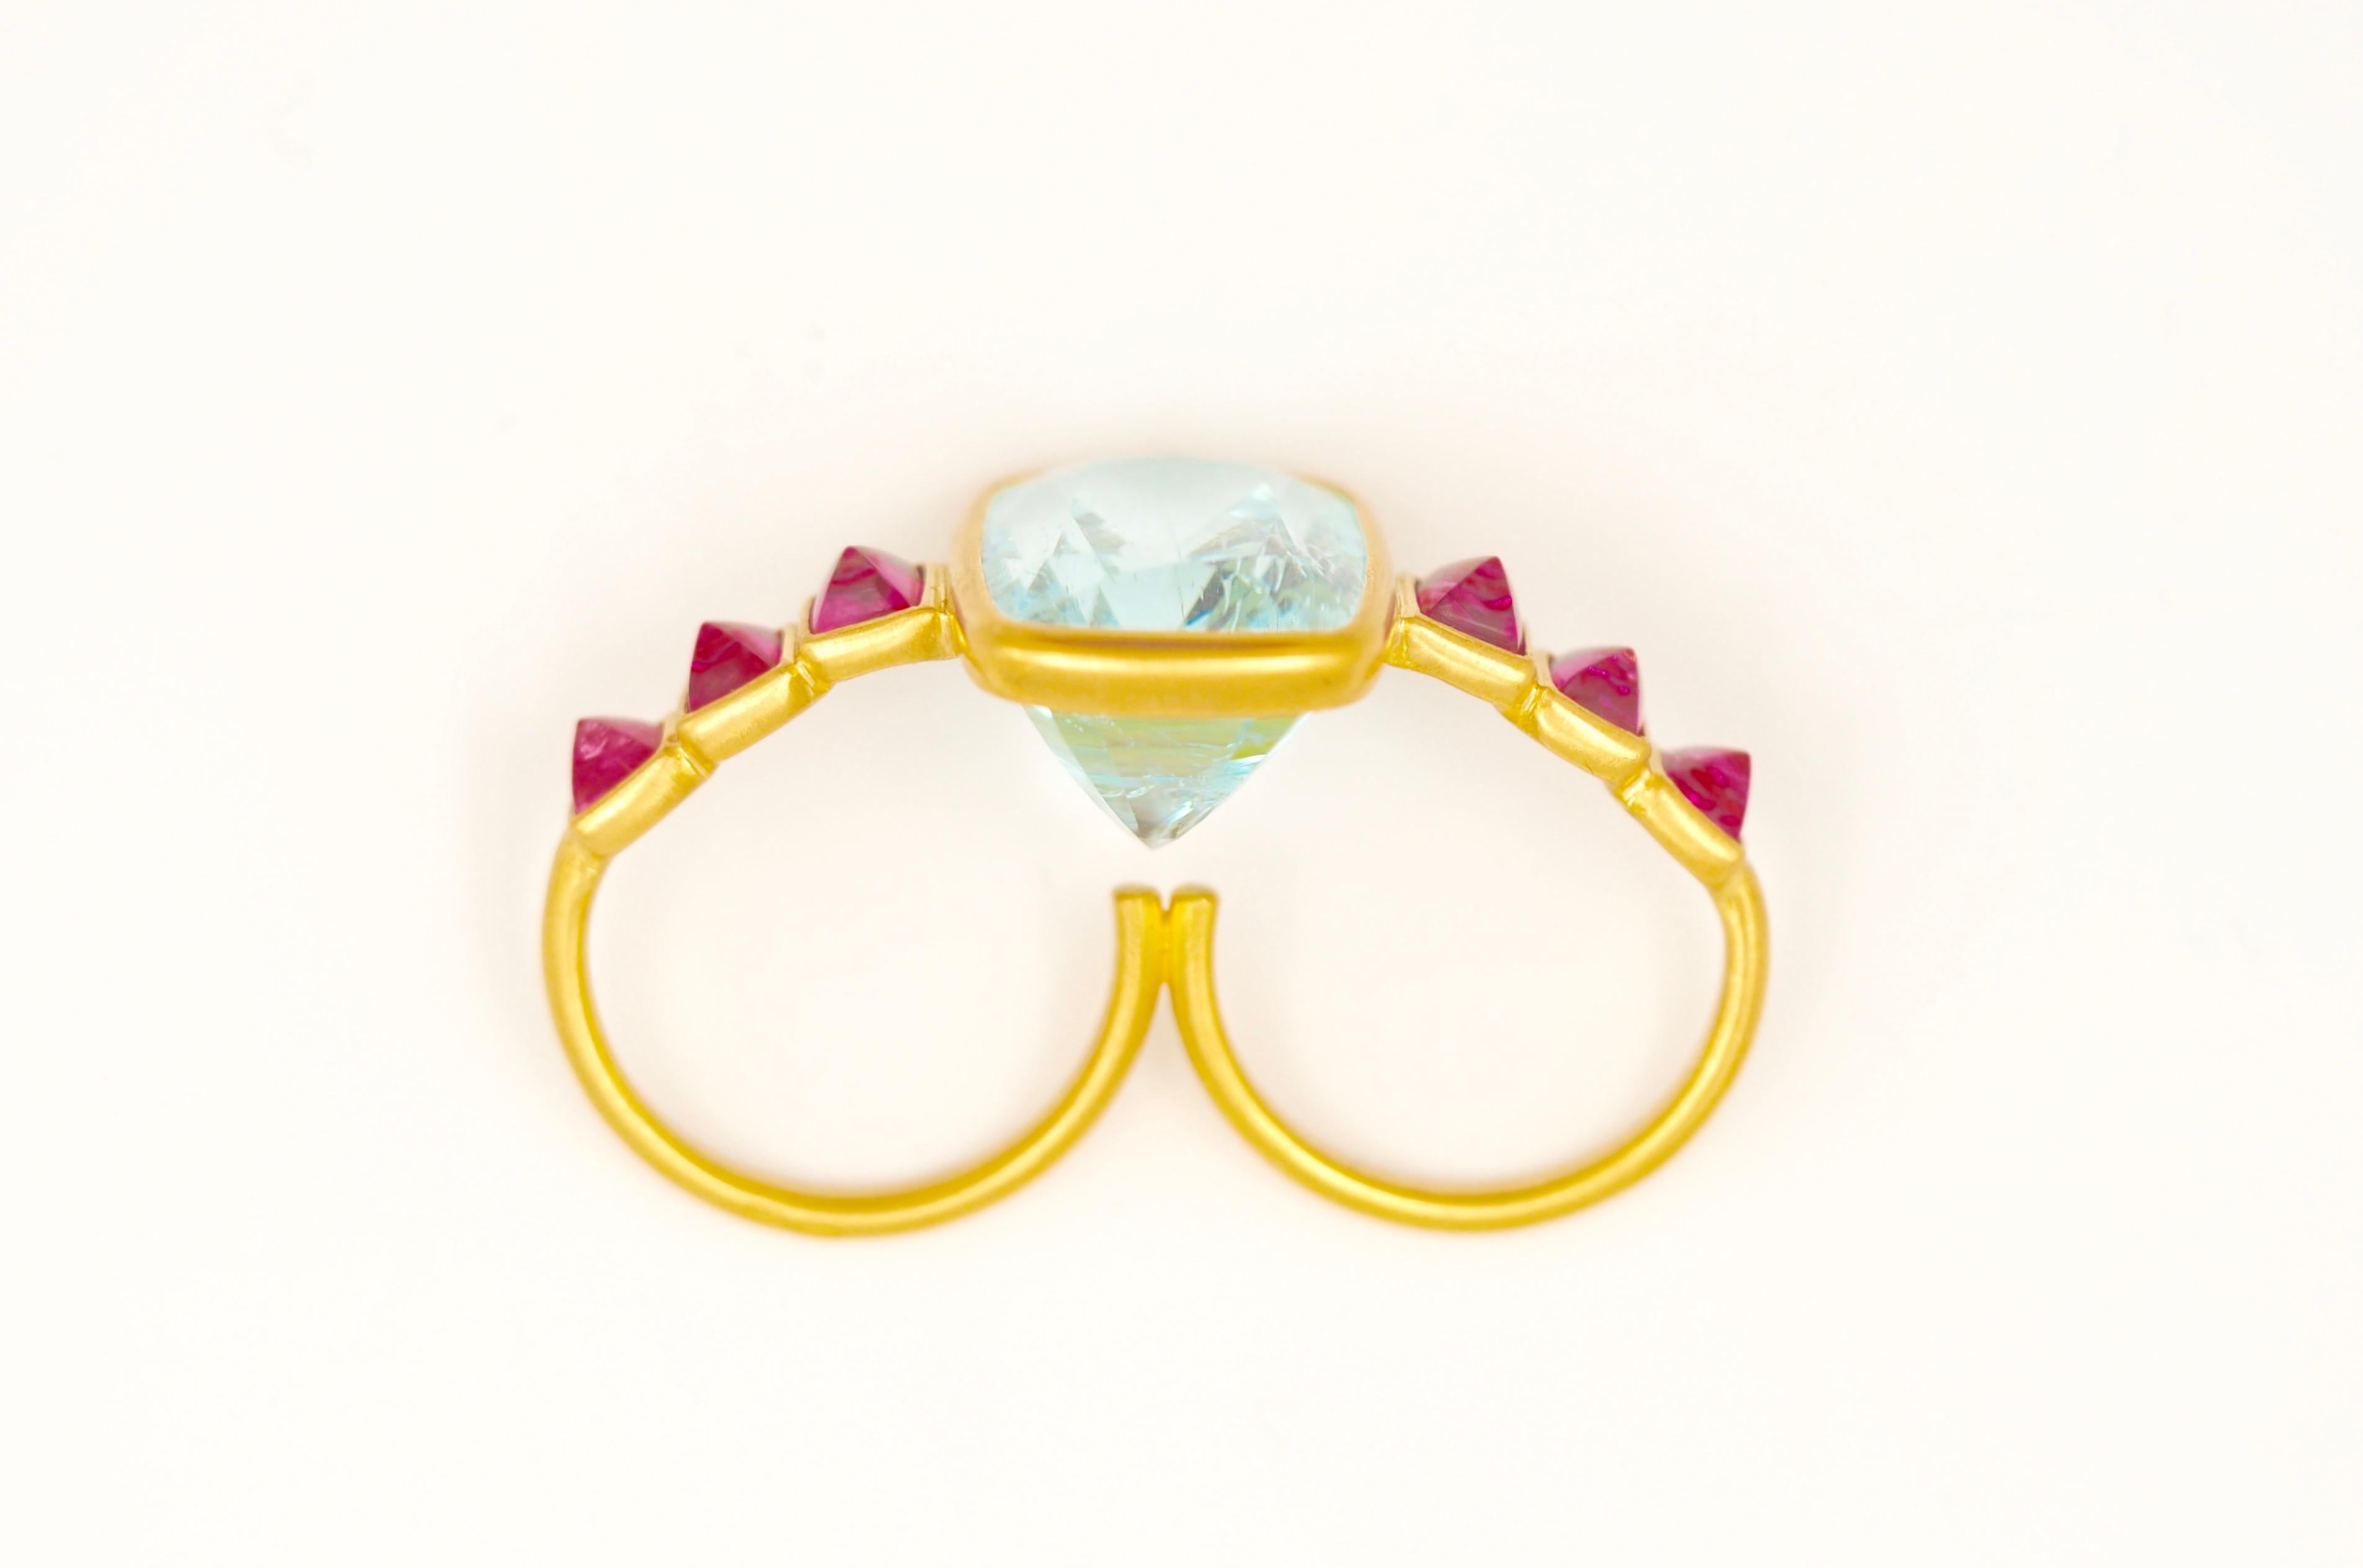 Emerald Cut Scrives Aquamarine Spinels Double Finger 22 Karat Gold Cocktail Ring For Sale